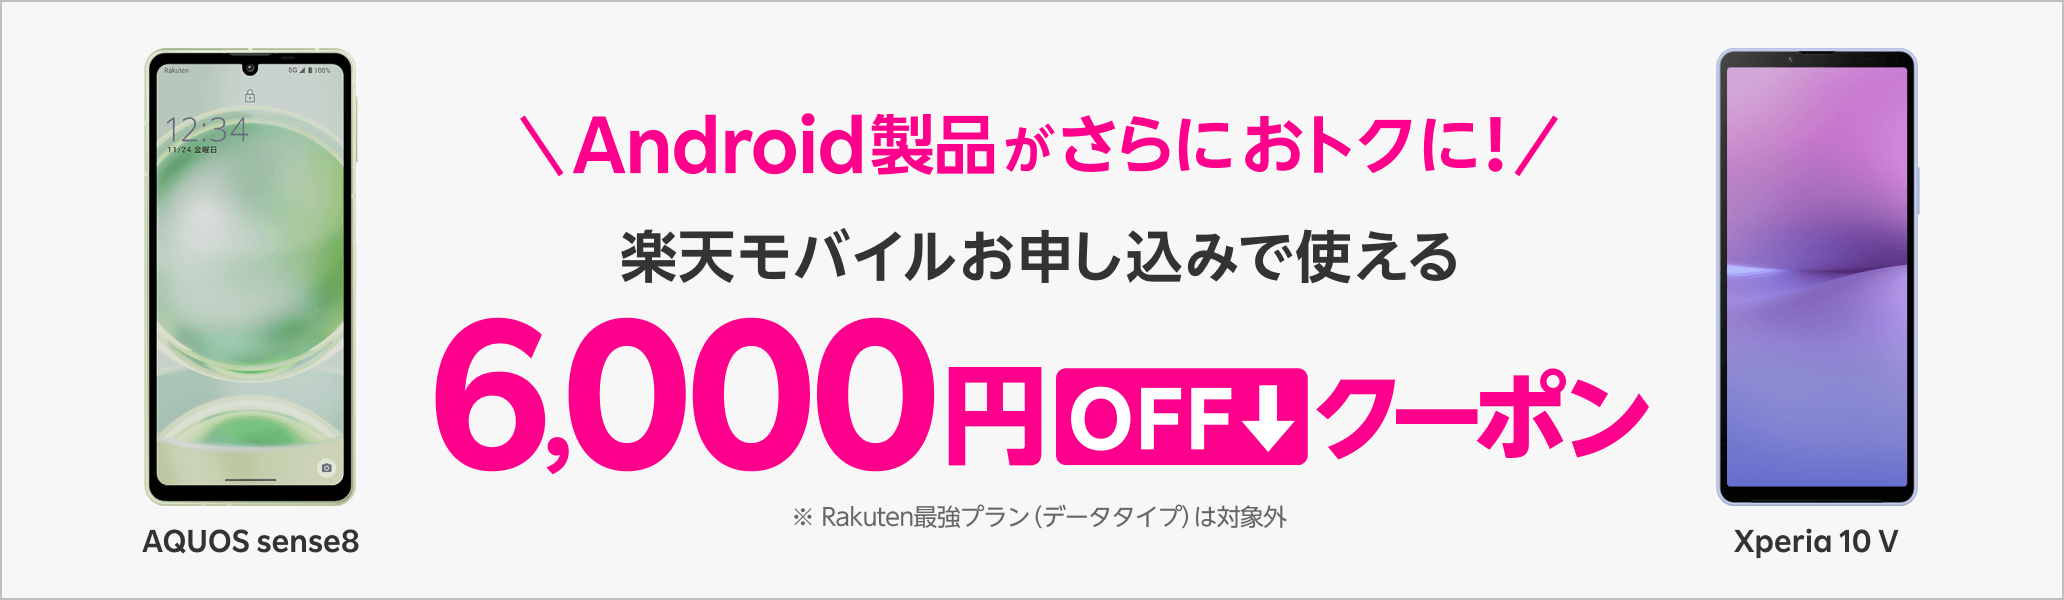 Android製品がさらにおトクに！楽天モバイルお申し込みで使える6,000円OFFクーポン※ Rakuten最強プラン（データタイプ）は対象外